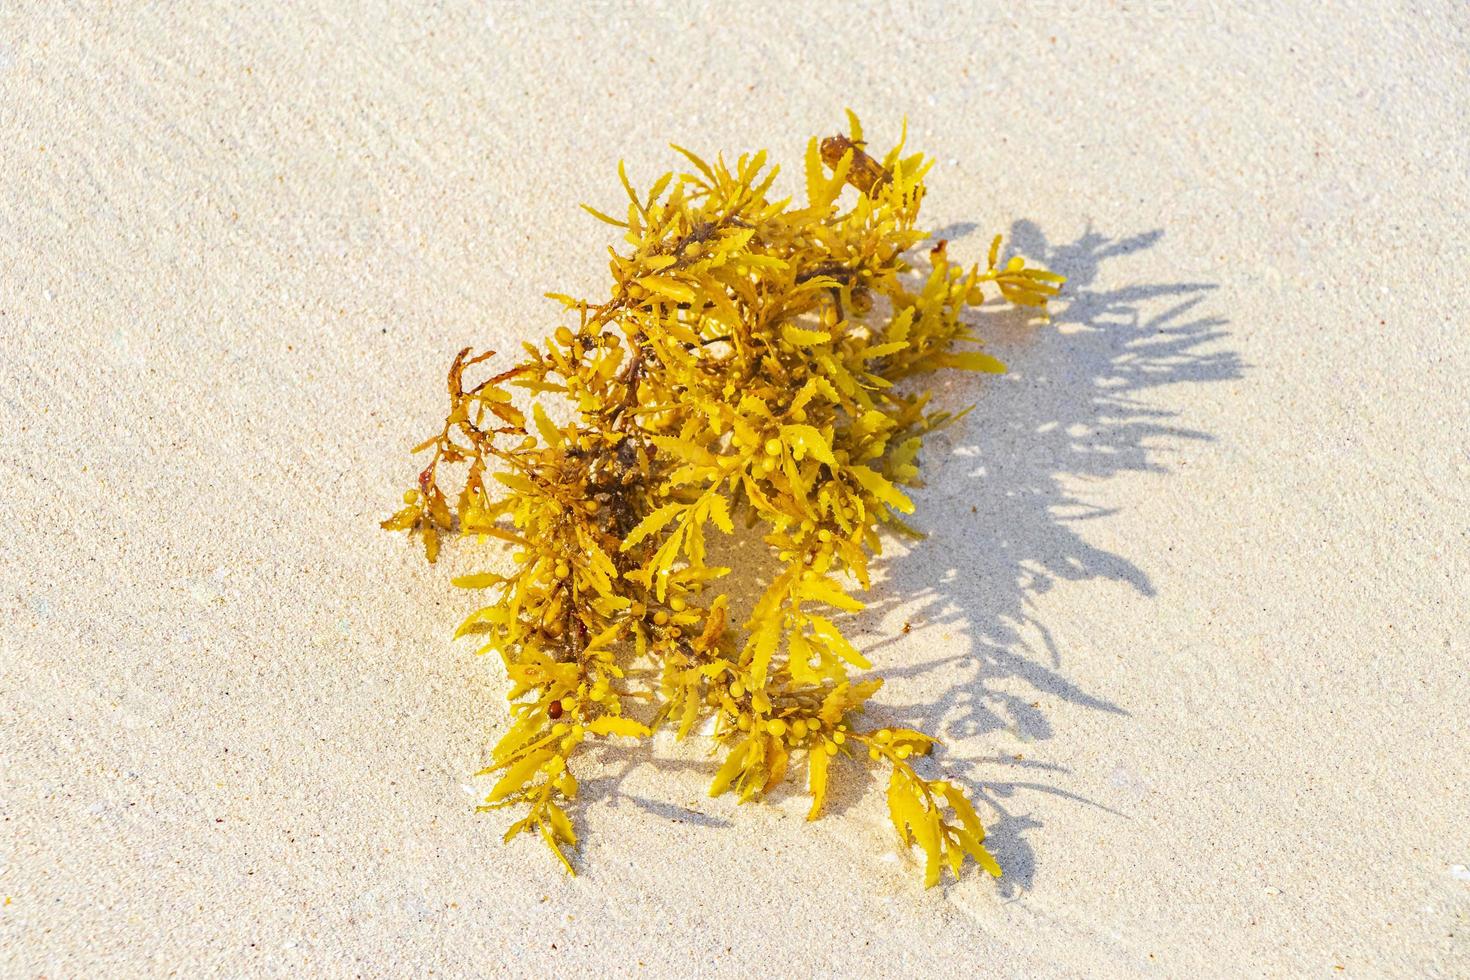 fresco amarelo algas marinhas sargazo praia playa del carmen méxico. foto